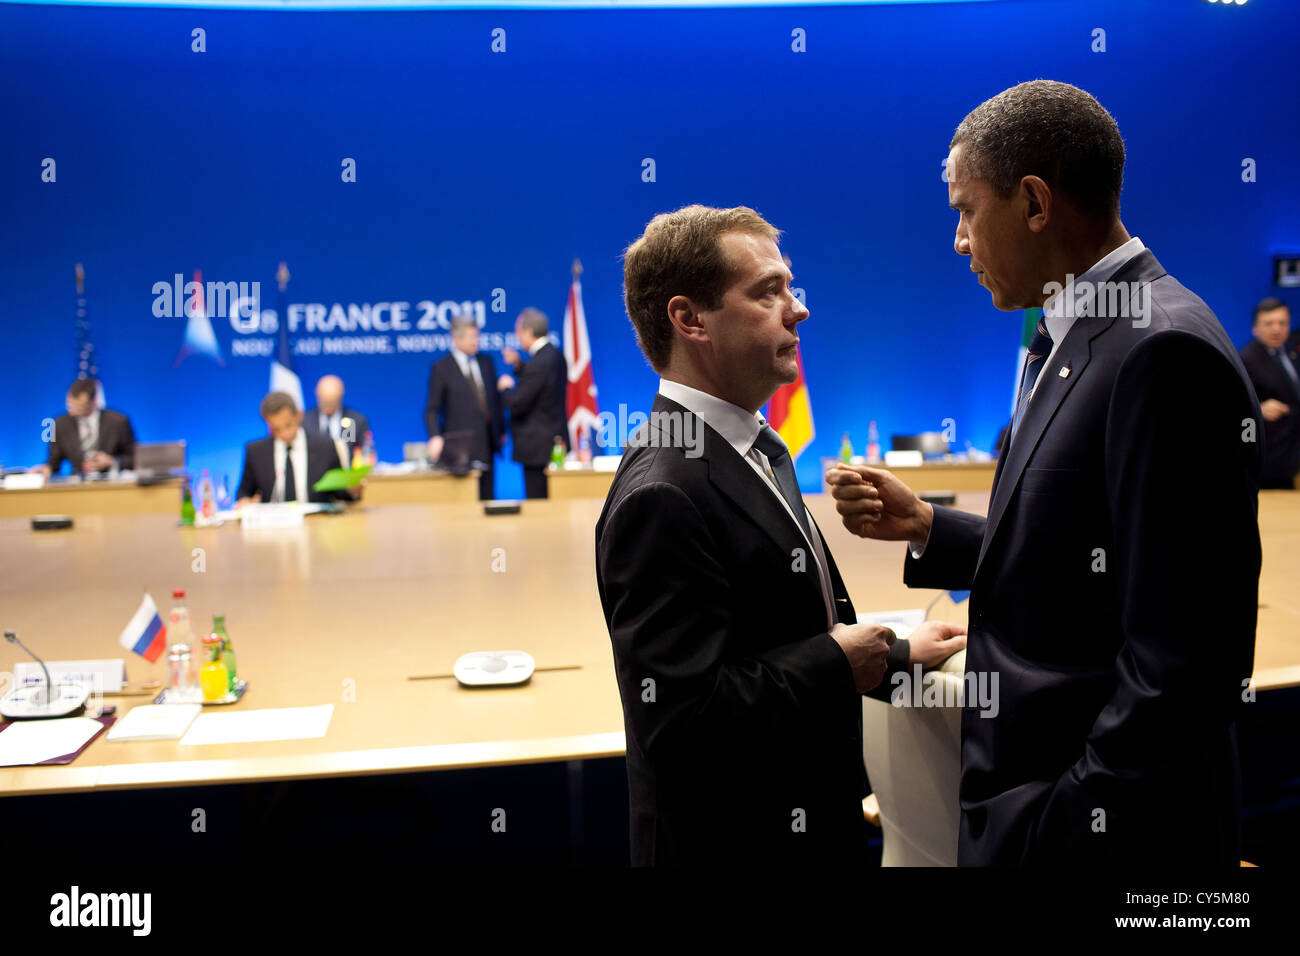 US-Präsident Barack Obama spricht mit russischen Präsidenten Dmitry Medvedev während des G8-Gipfels 27. Mai 2011 in Deauville, Frankreich. Stockfoto